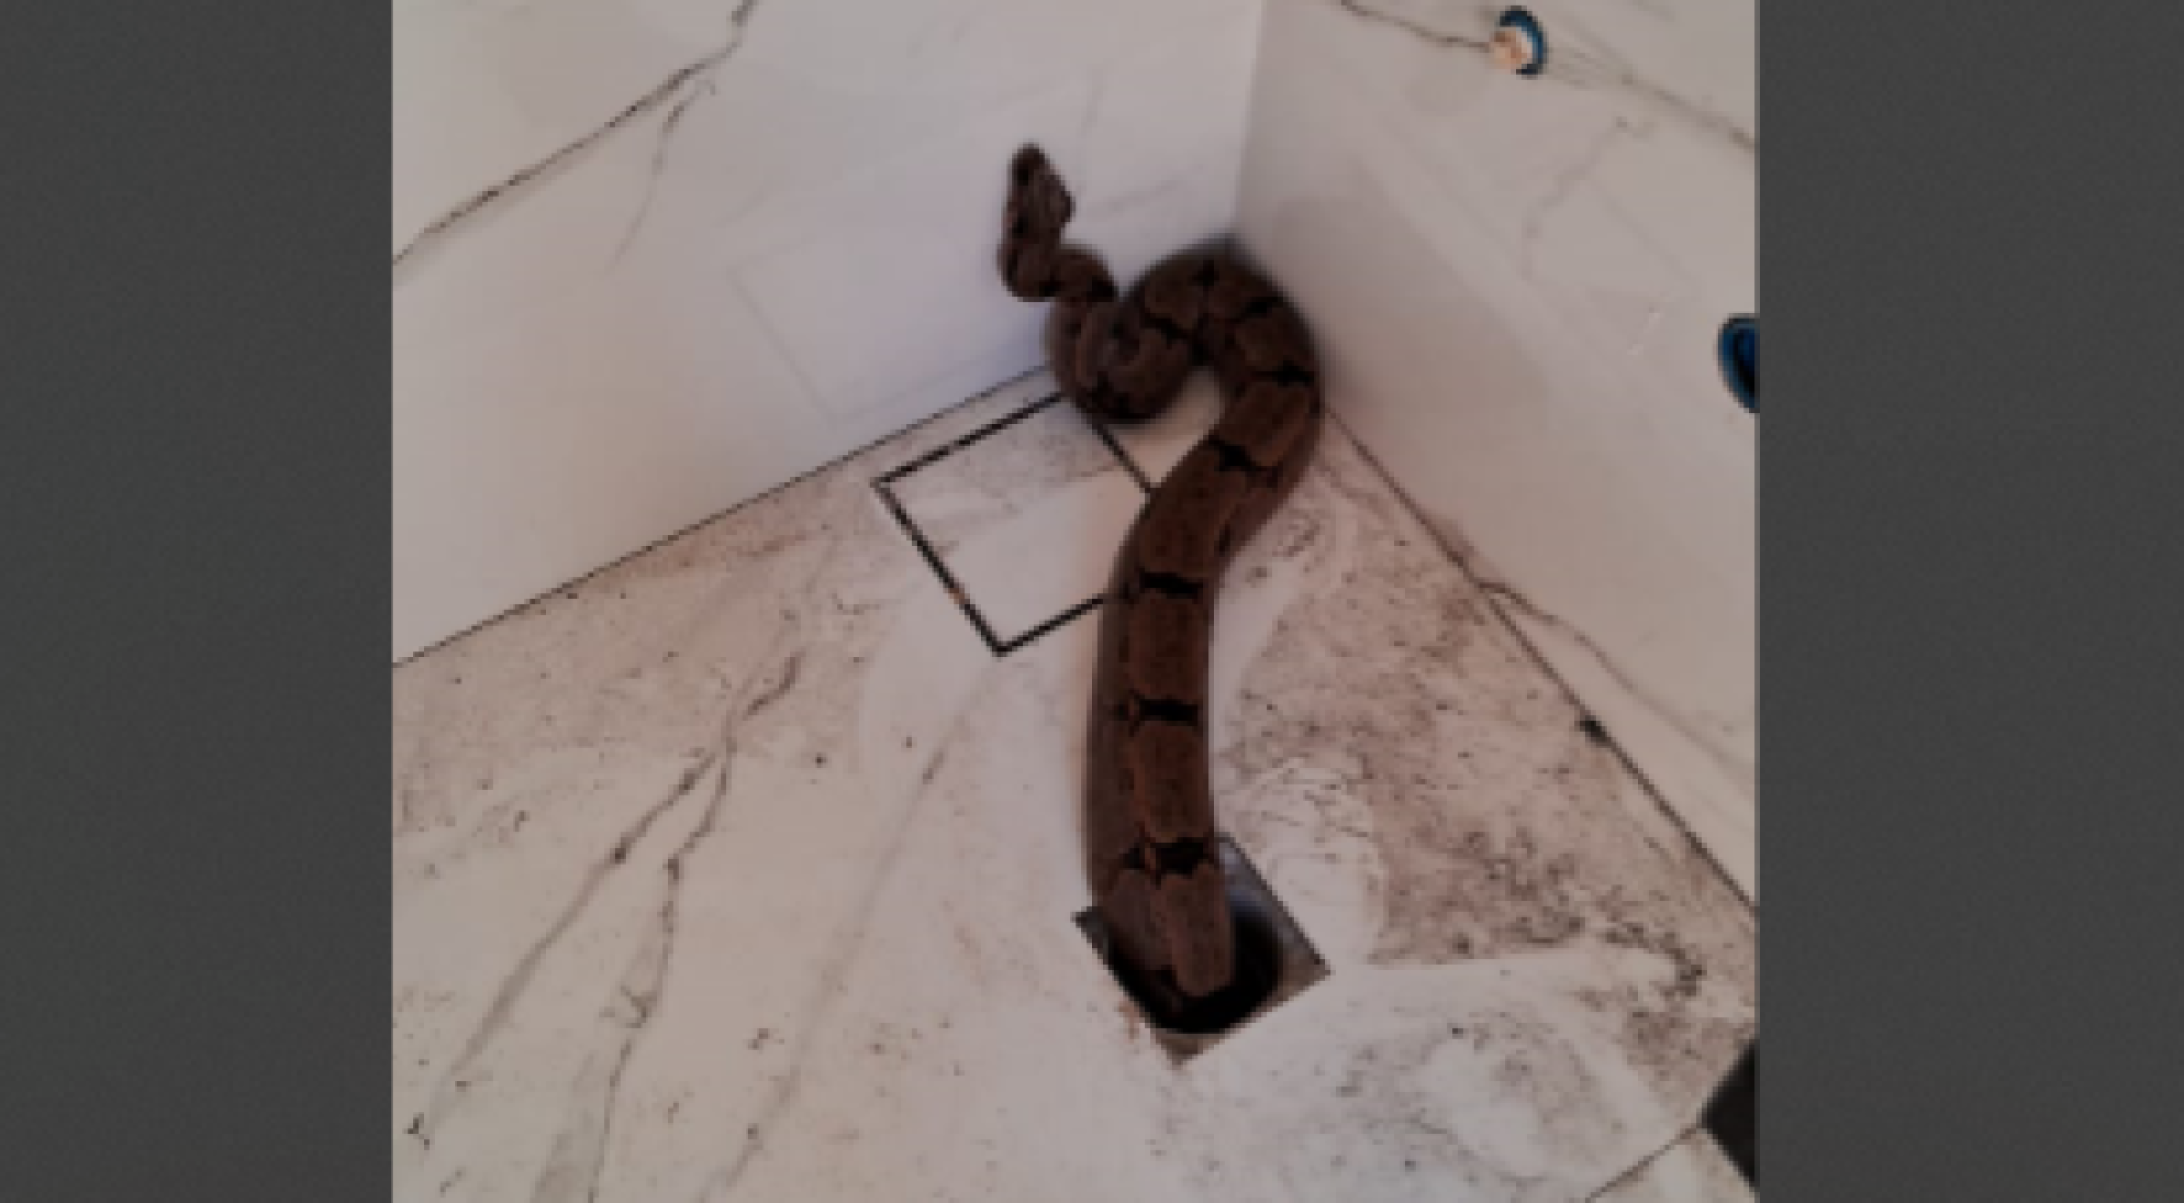 Serpente de 1,5 metro é capturada ao sair do ralo do banheiro